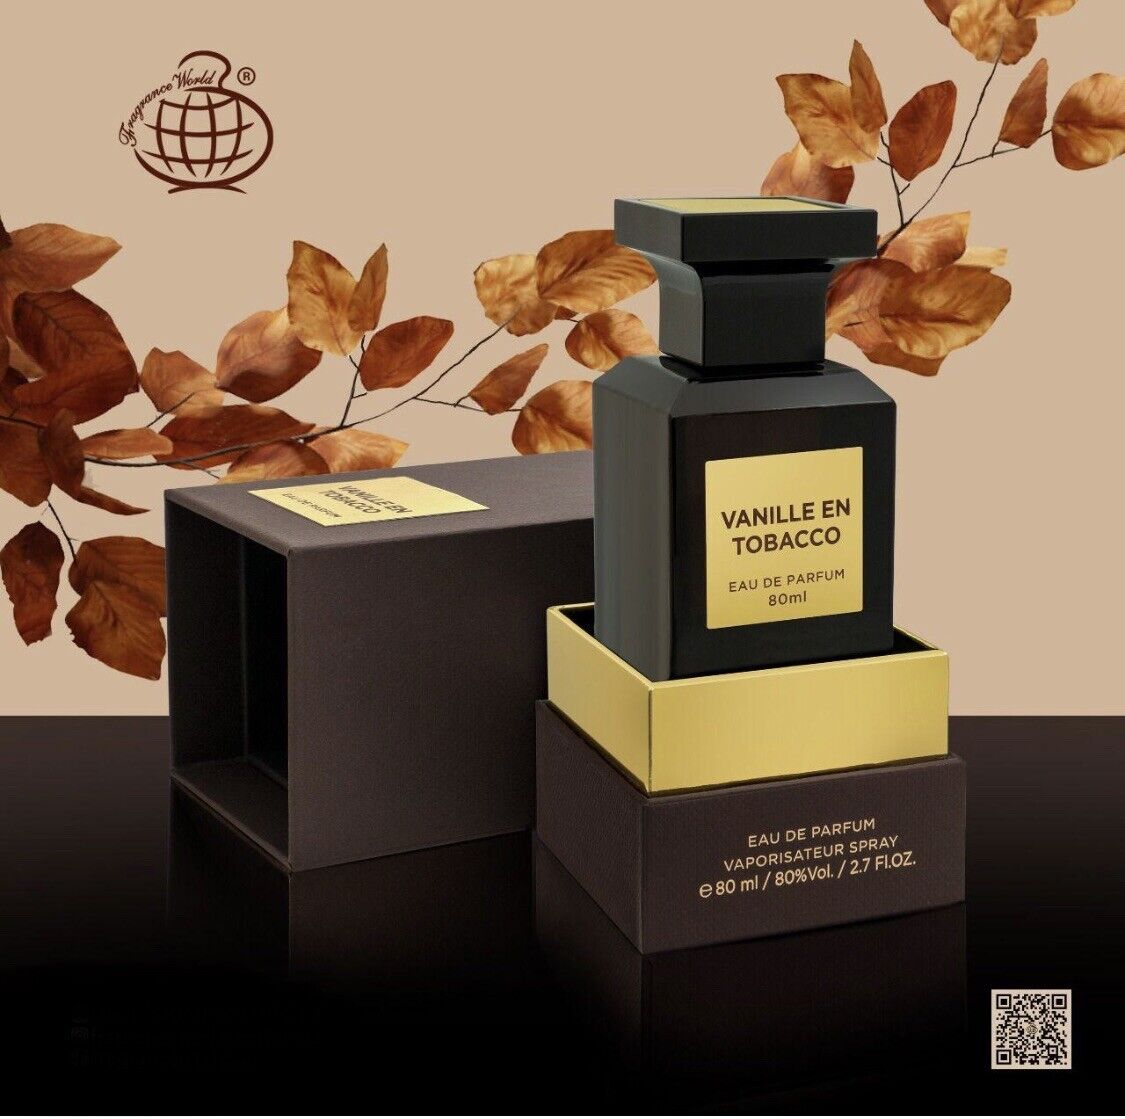 Vanille En Tobacco Eau De Parfum 80ml Fragrance World